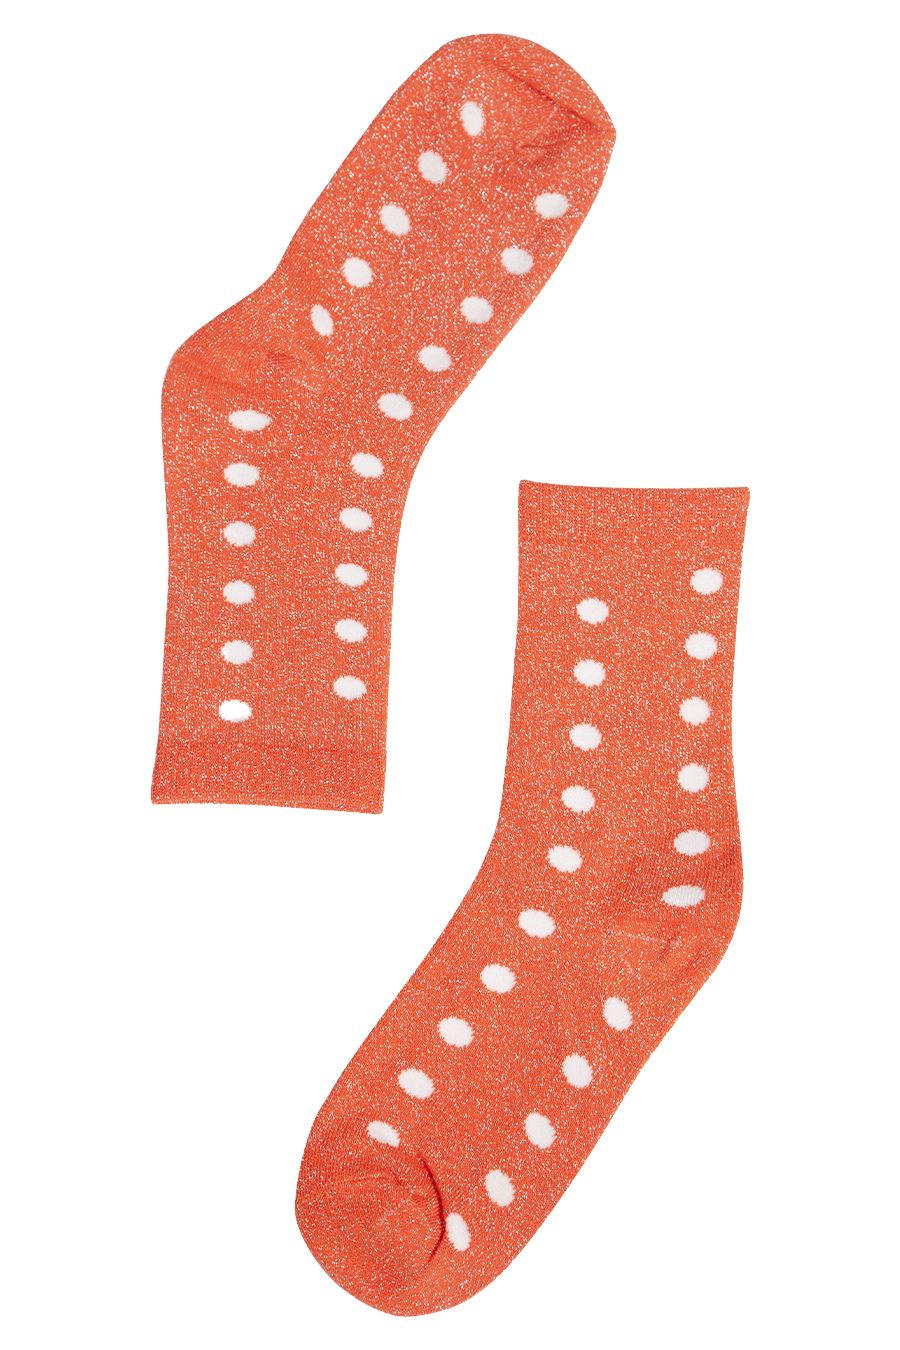 Womens Glitter Socks Polka Dot Sparkly Ankle Socks Shimmer Orange - Allison's Boutique